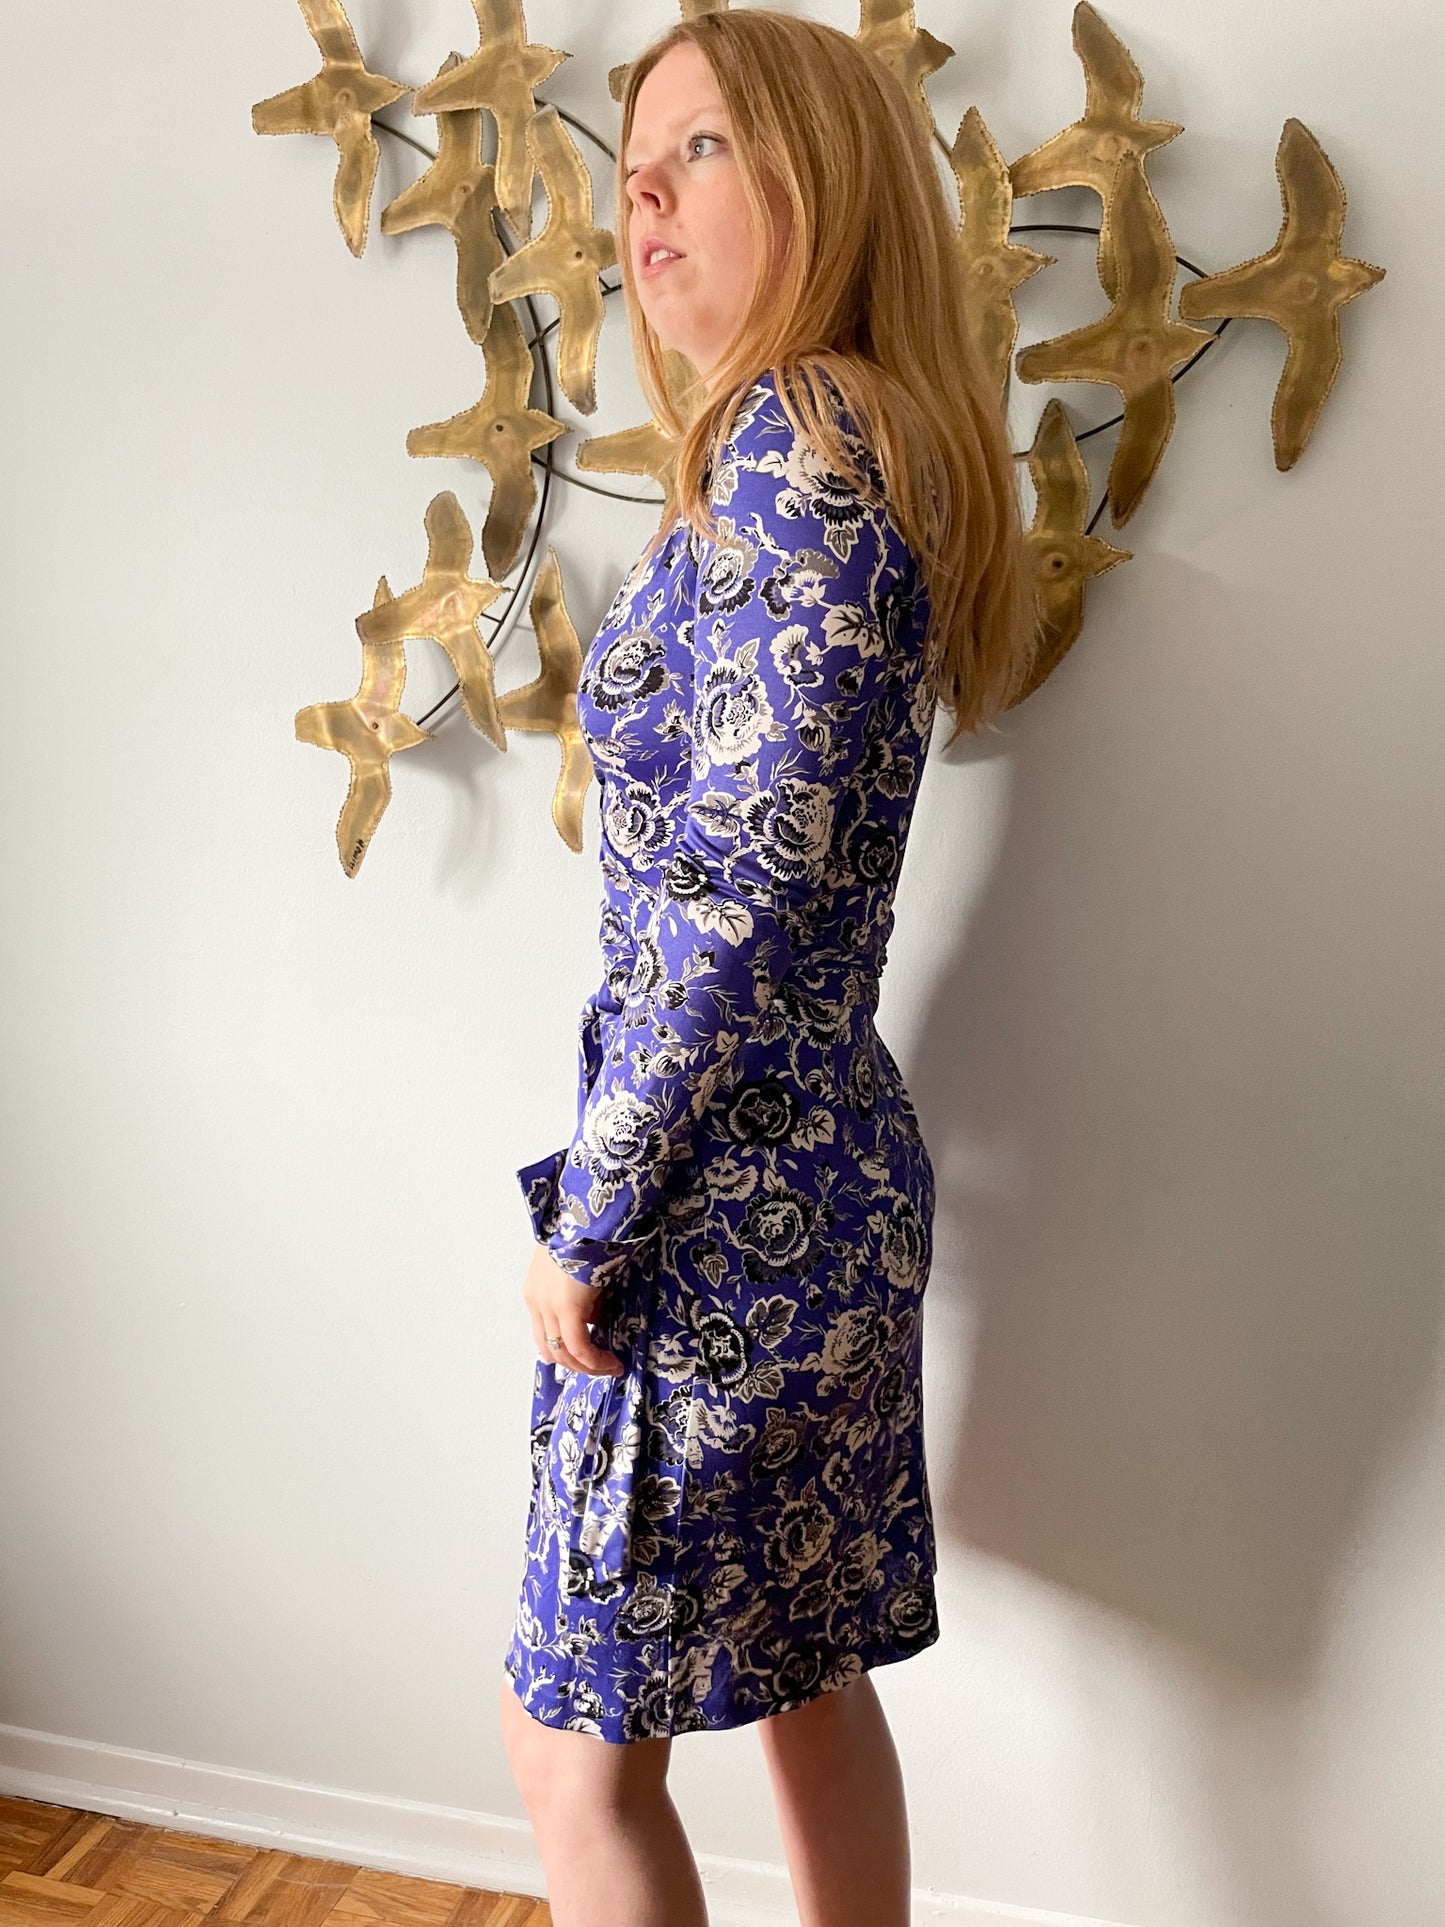 Diane Von Furstenberg Vintage Blue 100% Silk Floral Wrap Dress - Size 4 (XS/S)